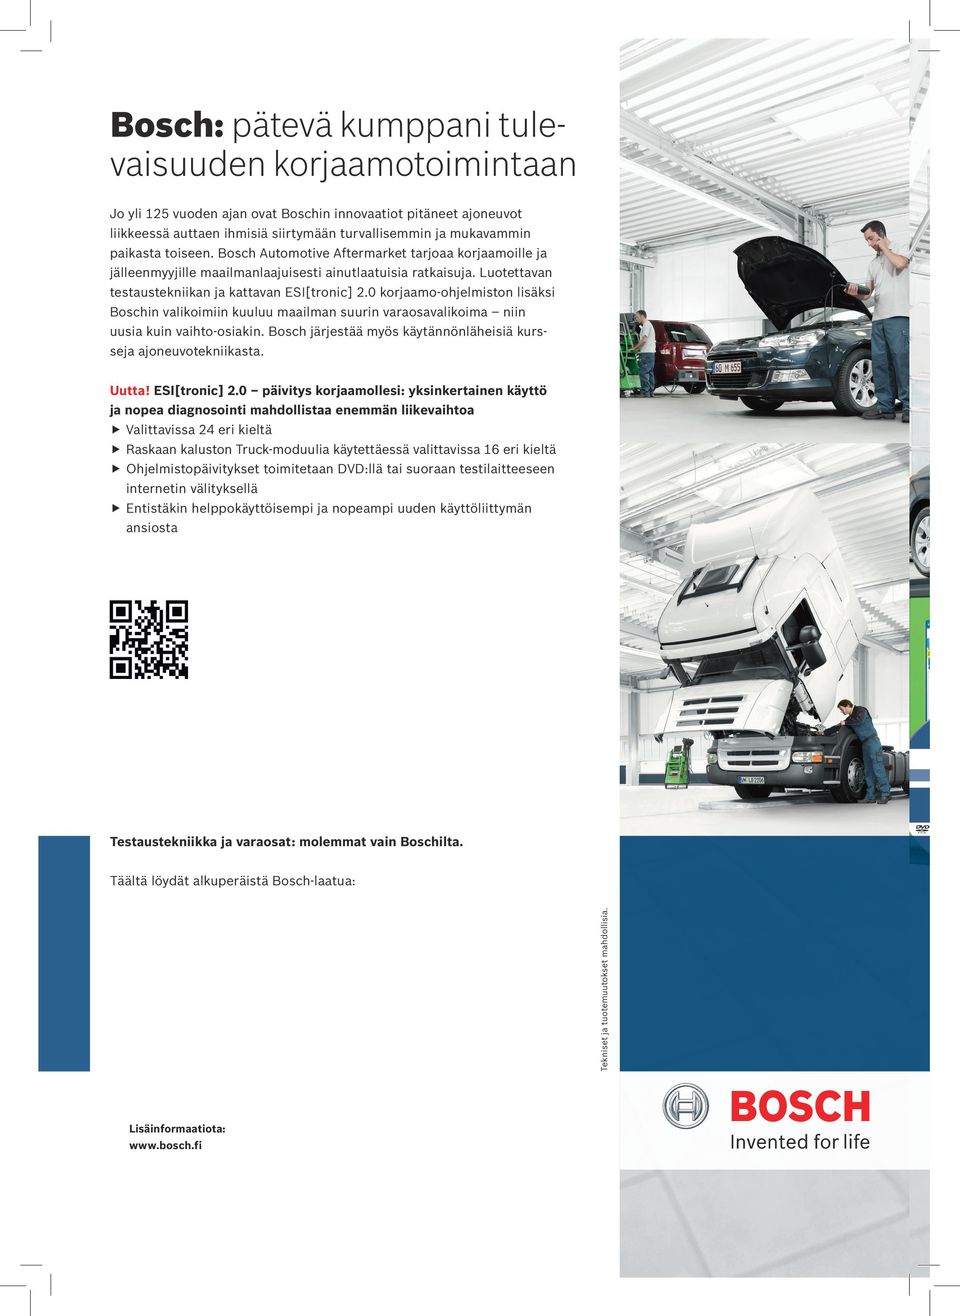 0 korjaamo-ohjelmiston lisäksi Boschin valikoimiin kuuluu maailman suurin varaosavalikoima niin uusia kuin vaihto-osiakin. Bosch järjestää myös käytännönläheisiä kursseja ajoneuvotekniikasta. Uutta!